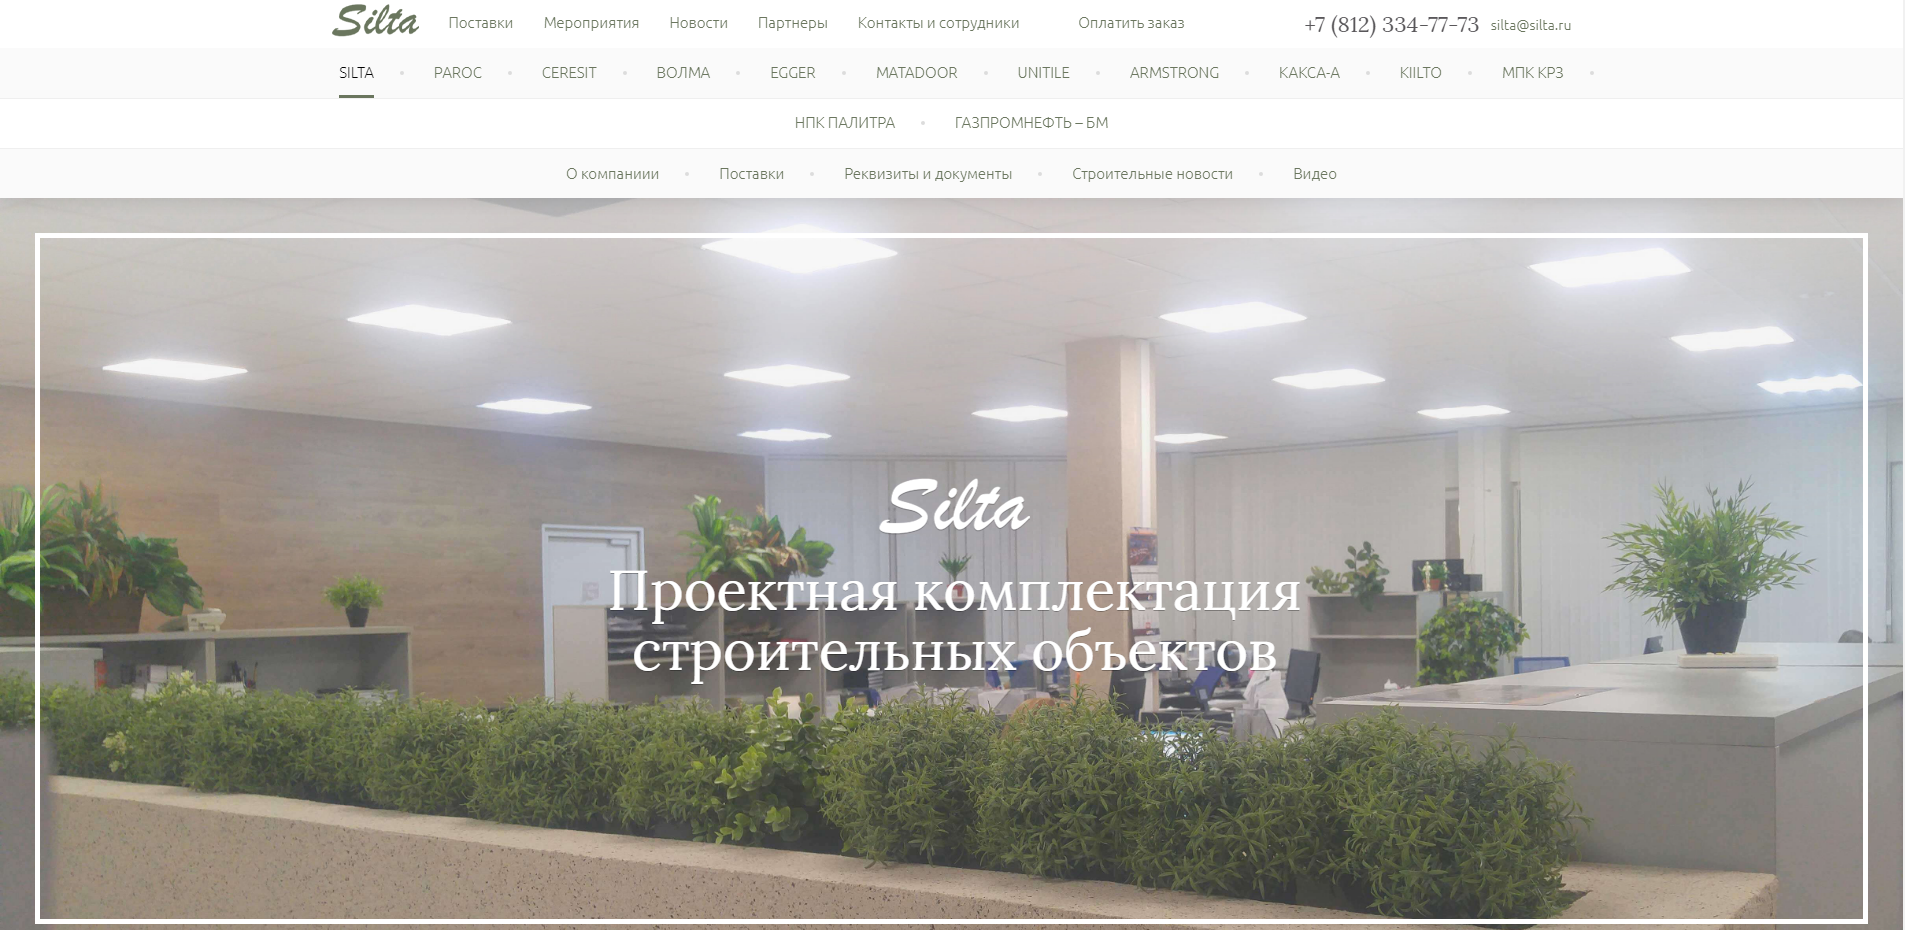 функциональный корпоративный сайт компании silta